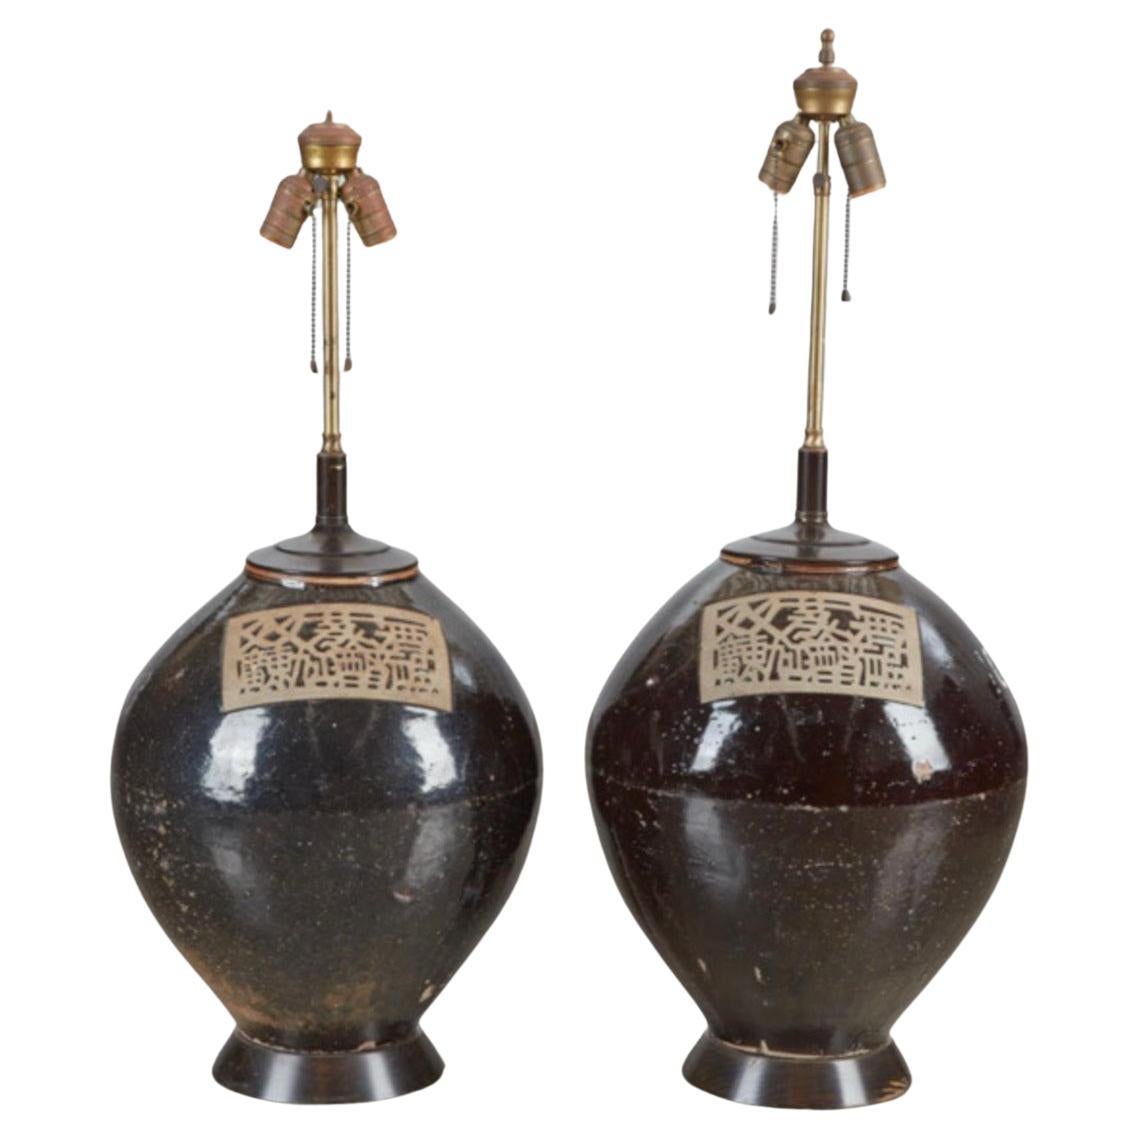 Paar japanische Keramik-Aufbewahrungsgefäß-Lampen aus dem 19. Jahrhundert, Billy Haines zugeschrieben